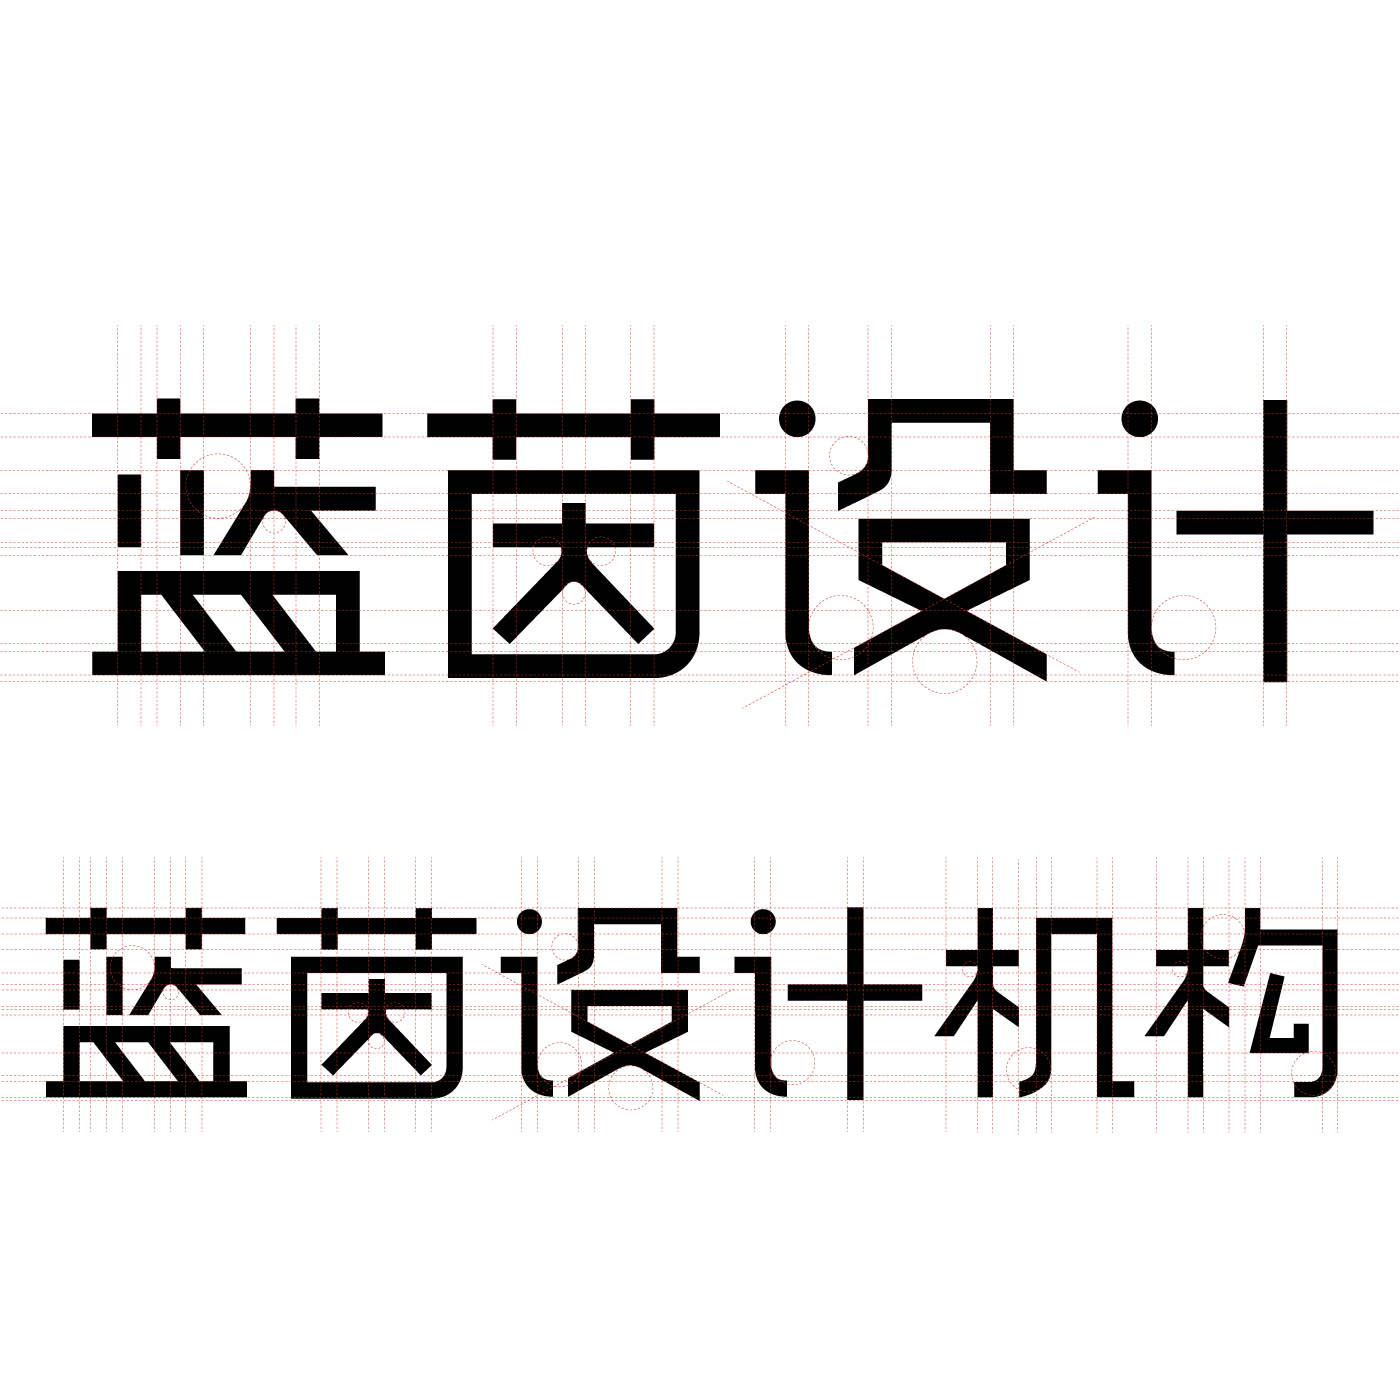 上海腾营汽车设计有限公司的企业标志